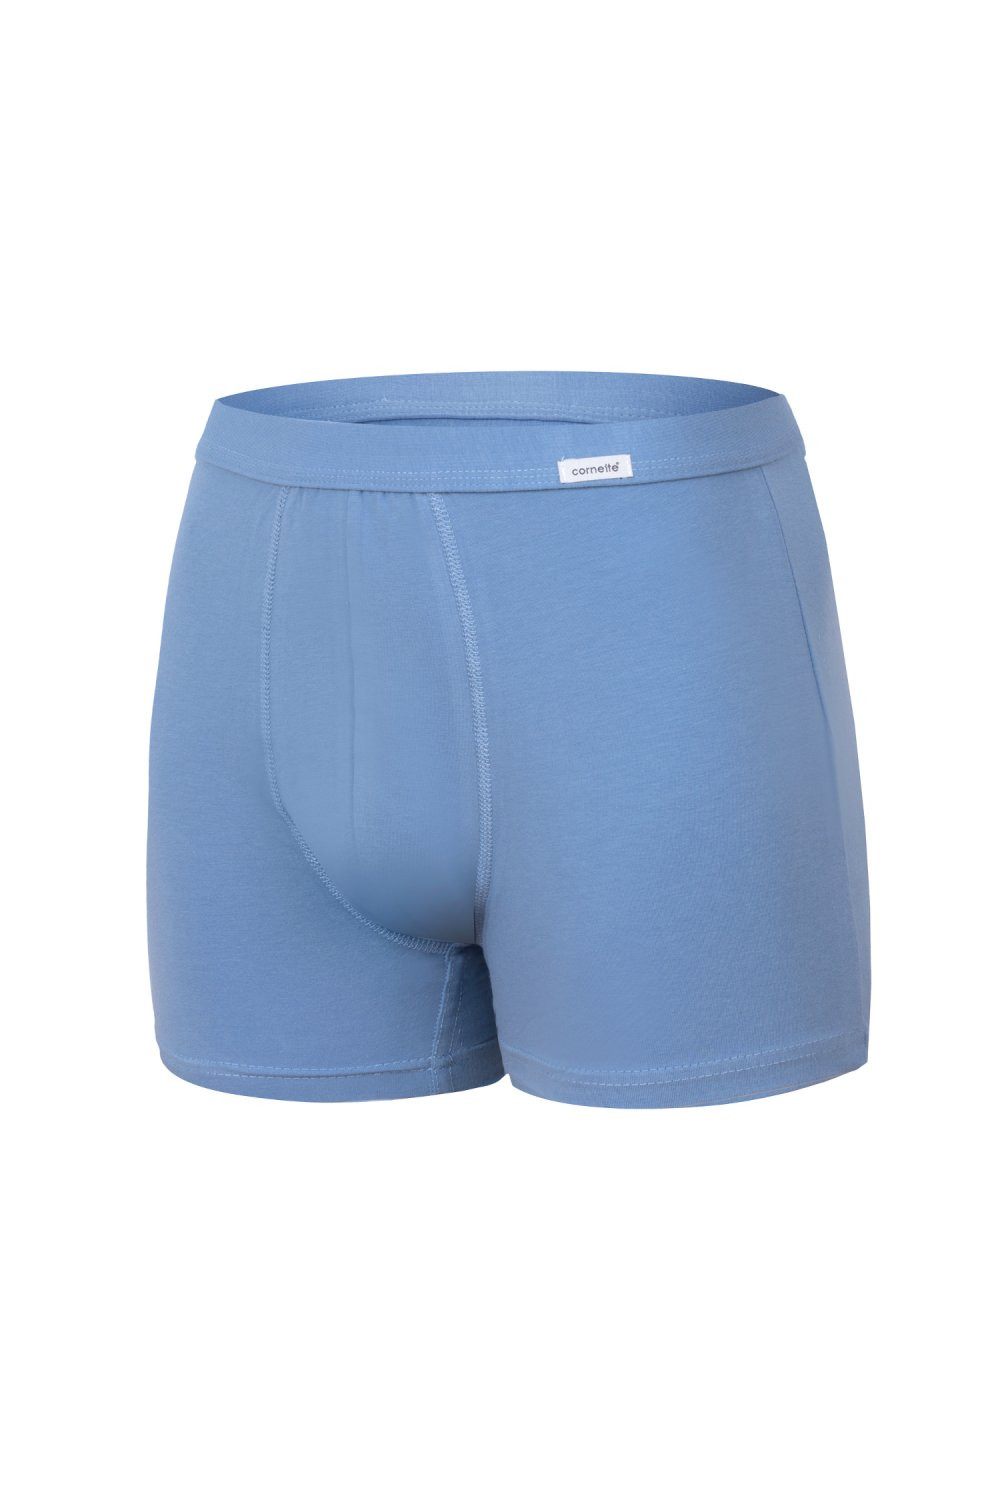 Pánské boxerky 092 Authentic plus light blue - CORNETTE světle modrá 5XL